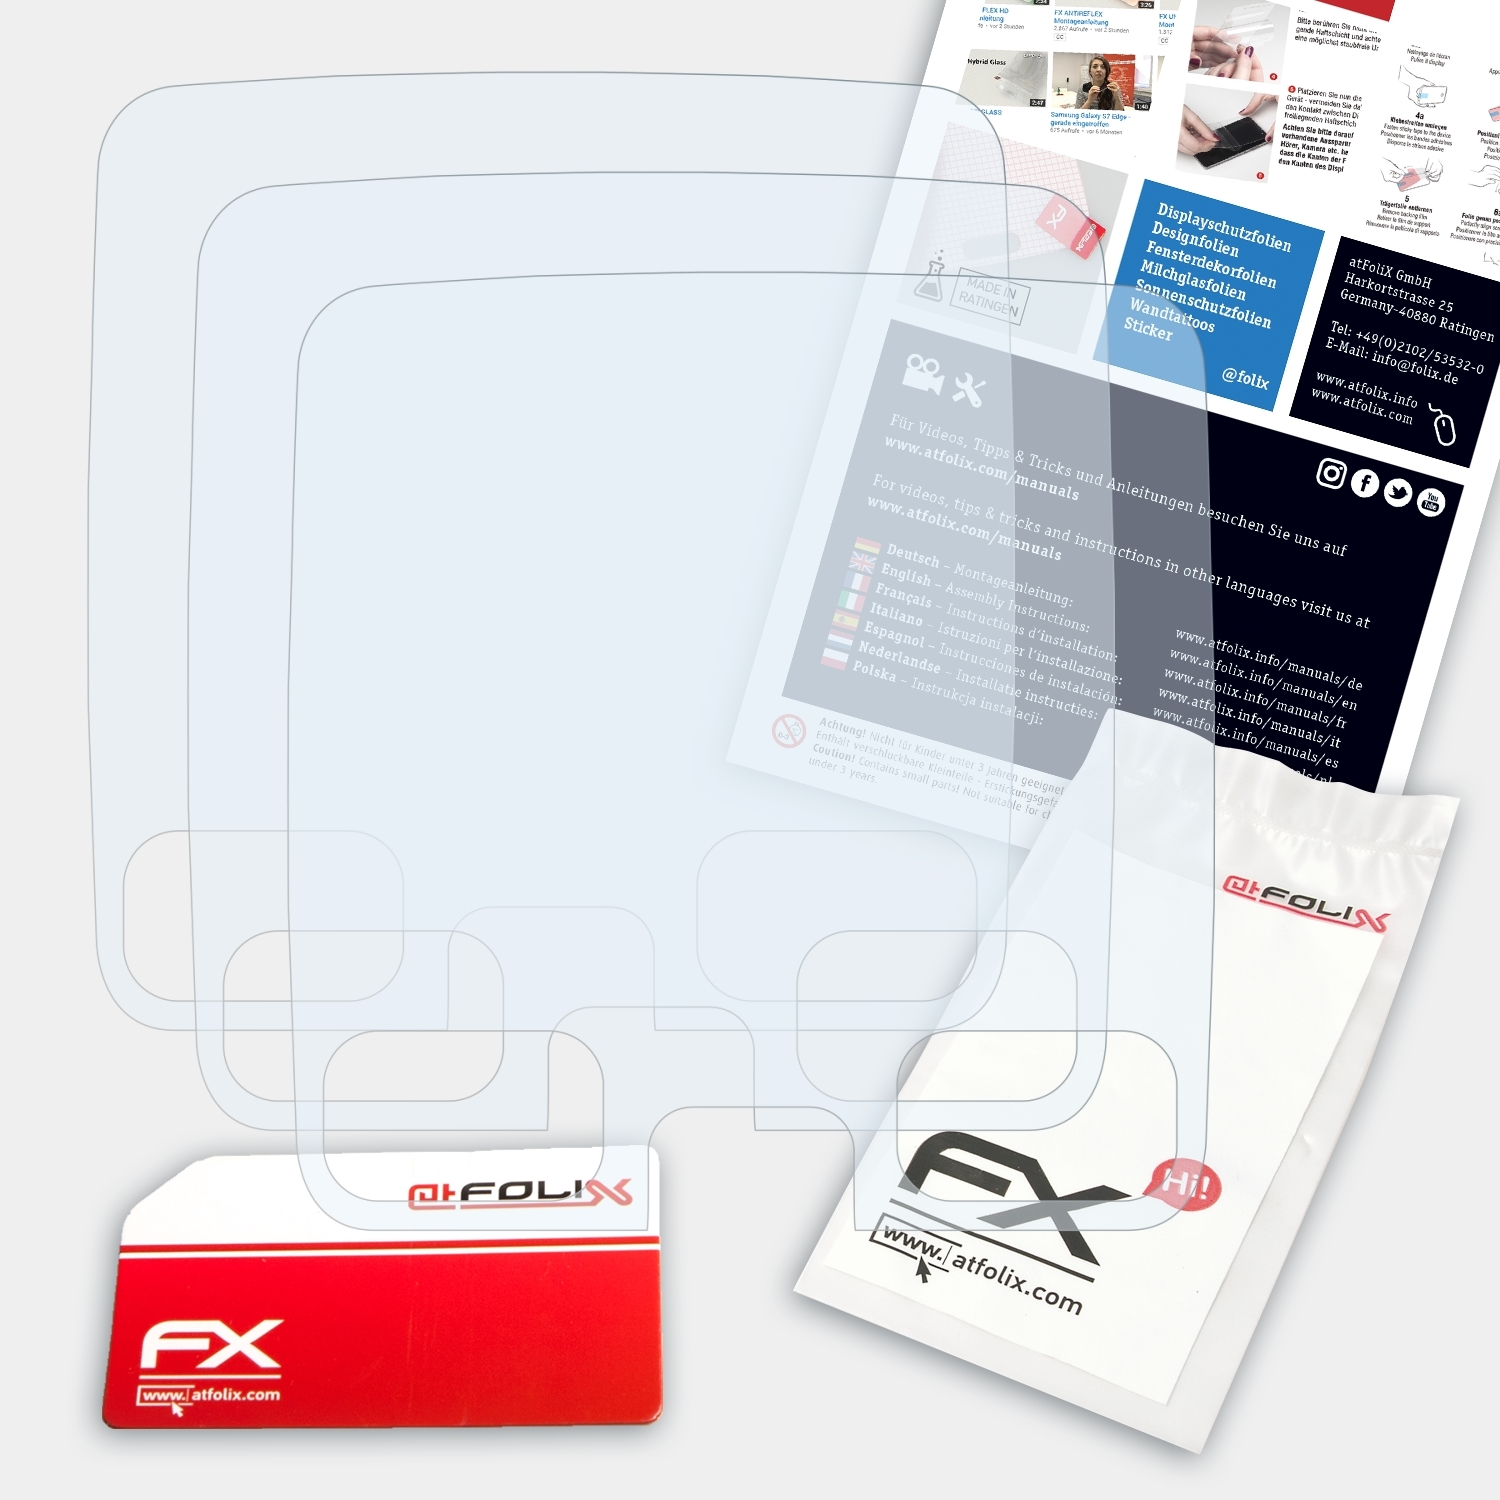 ATFOLIX 3x FX-Clear IP) Displayschutz(für Secure Doro 580